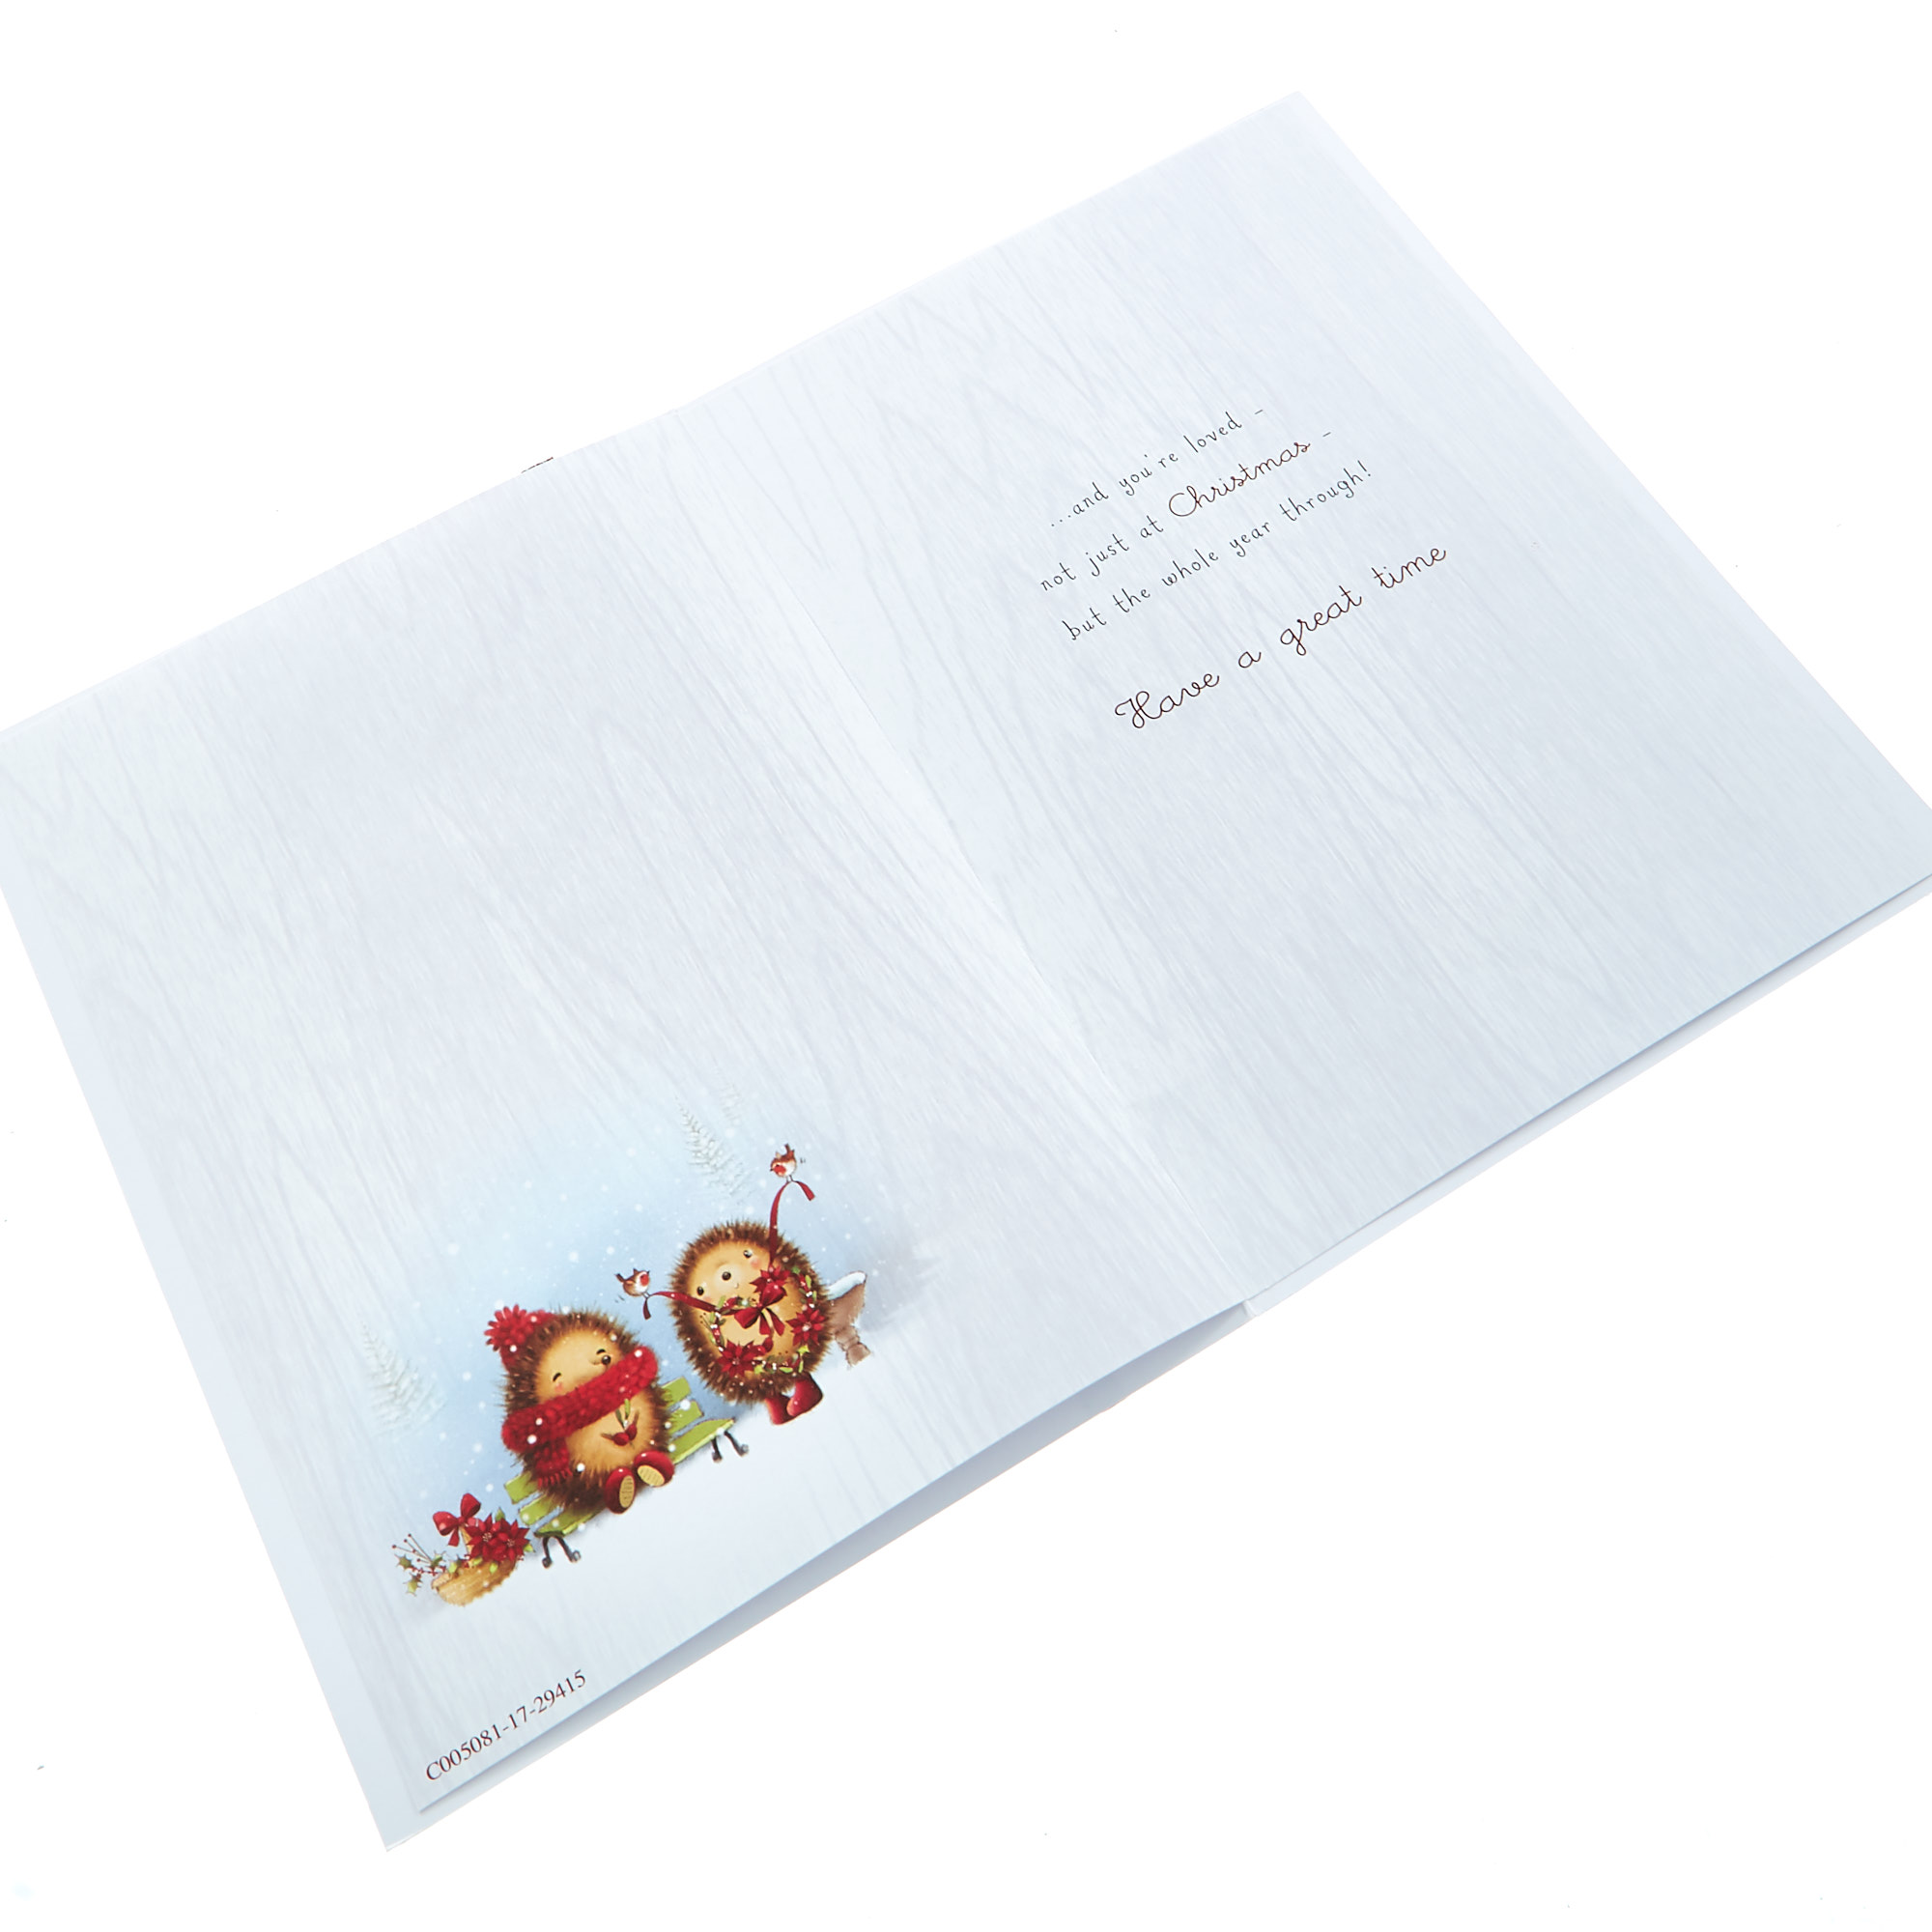 Christmas Card - Nanna & Grandad Hedgehogs 